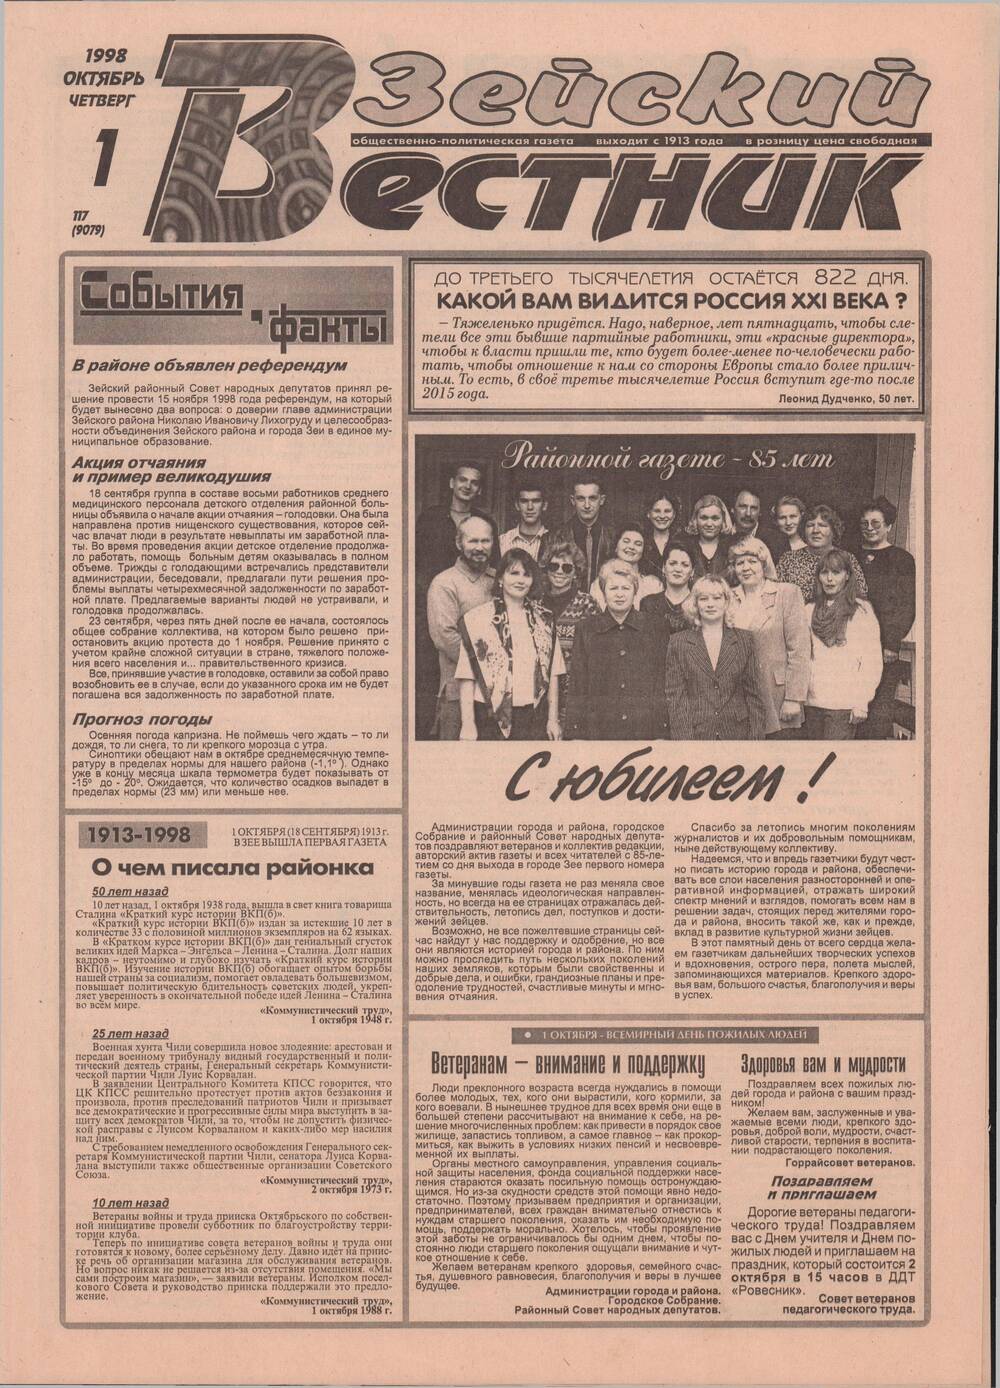 Газета Зейский вестник № 117 от 1 октября 1998 г. с материалами, посвященными 85-летию районной газеты.